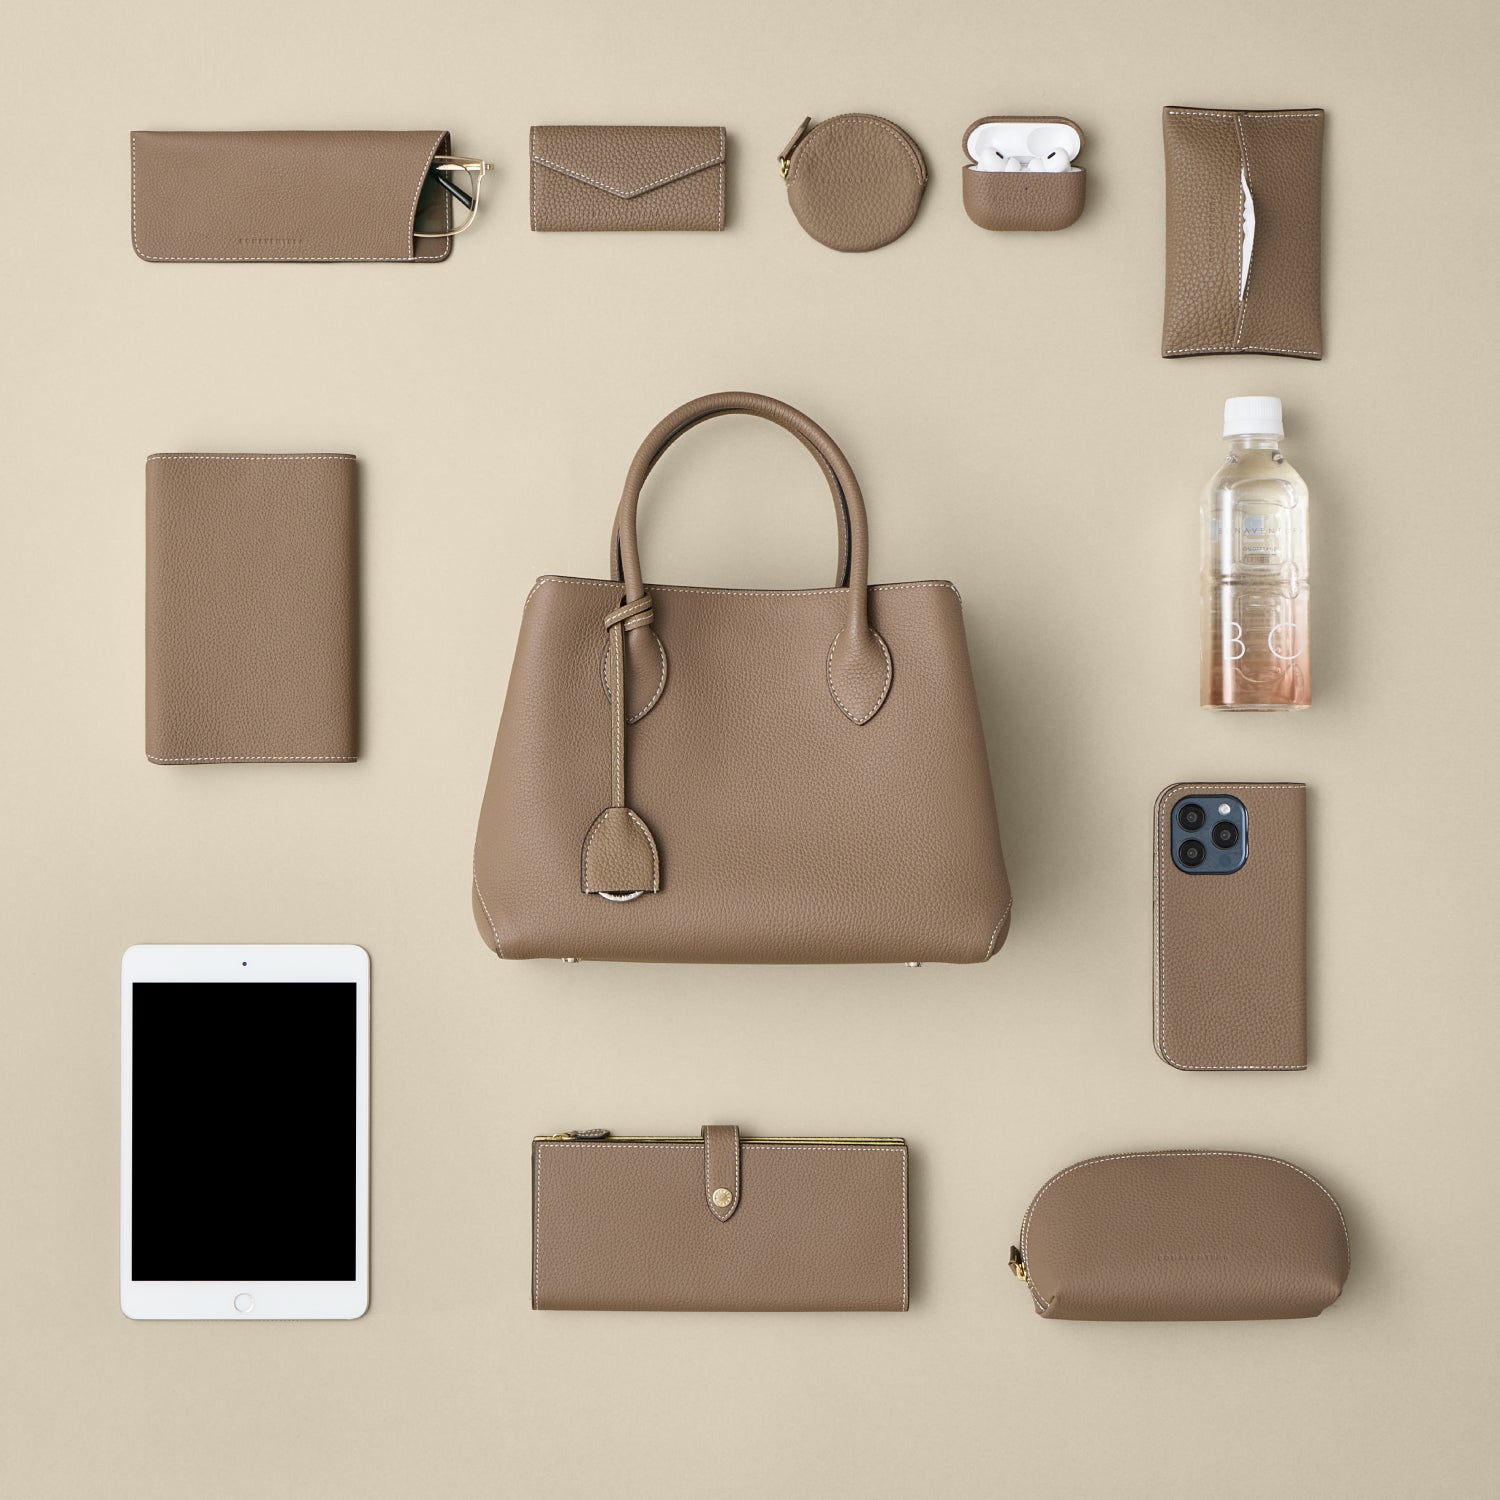 Tuvplāns Mia Tote Bag Small uz galda, kurā redzama somas ietilpība ar daudziem atbilstošiem ādas izstrādājumiem.